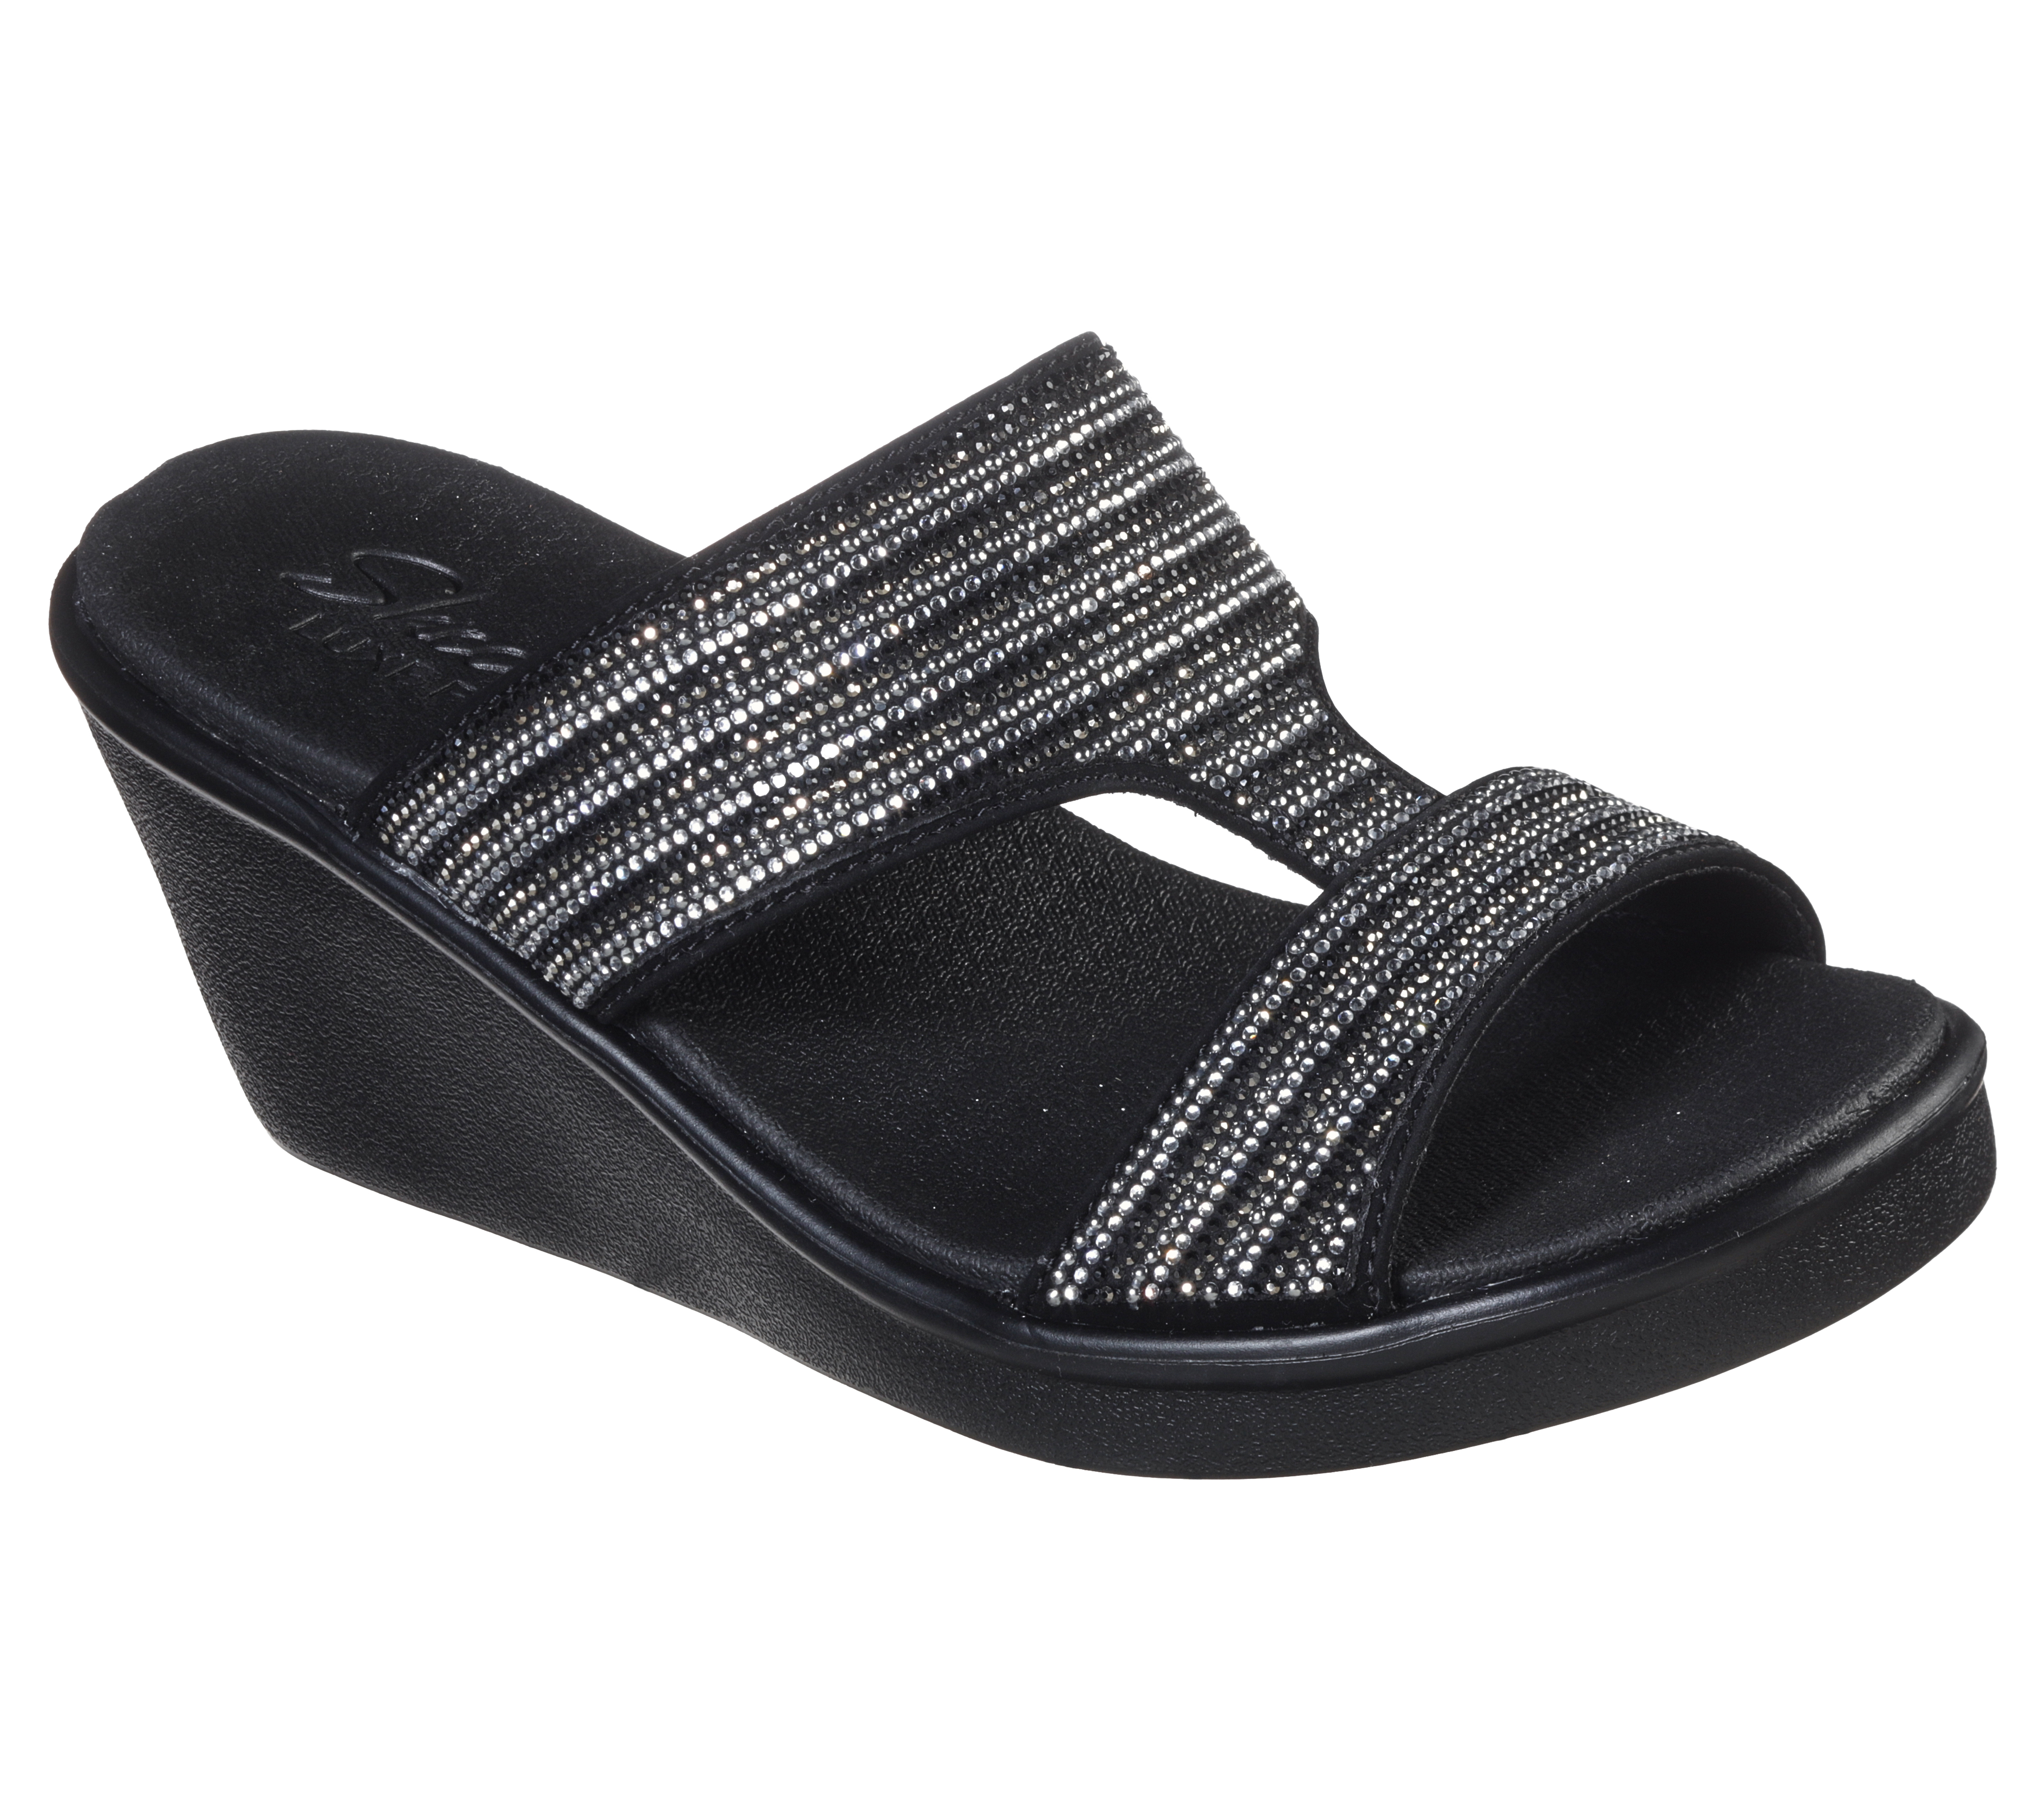 skechers black wedge sandals with rhinestones